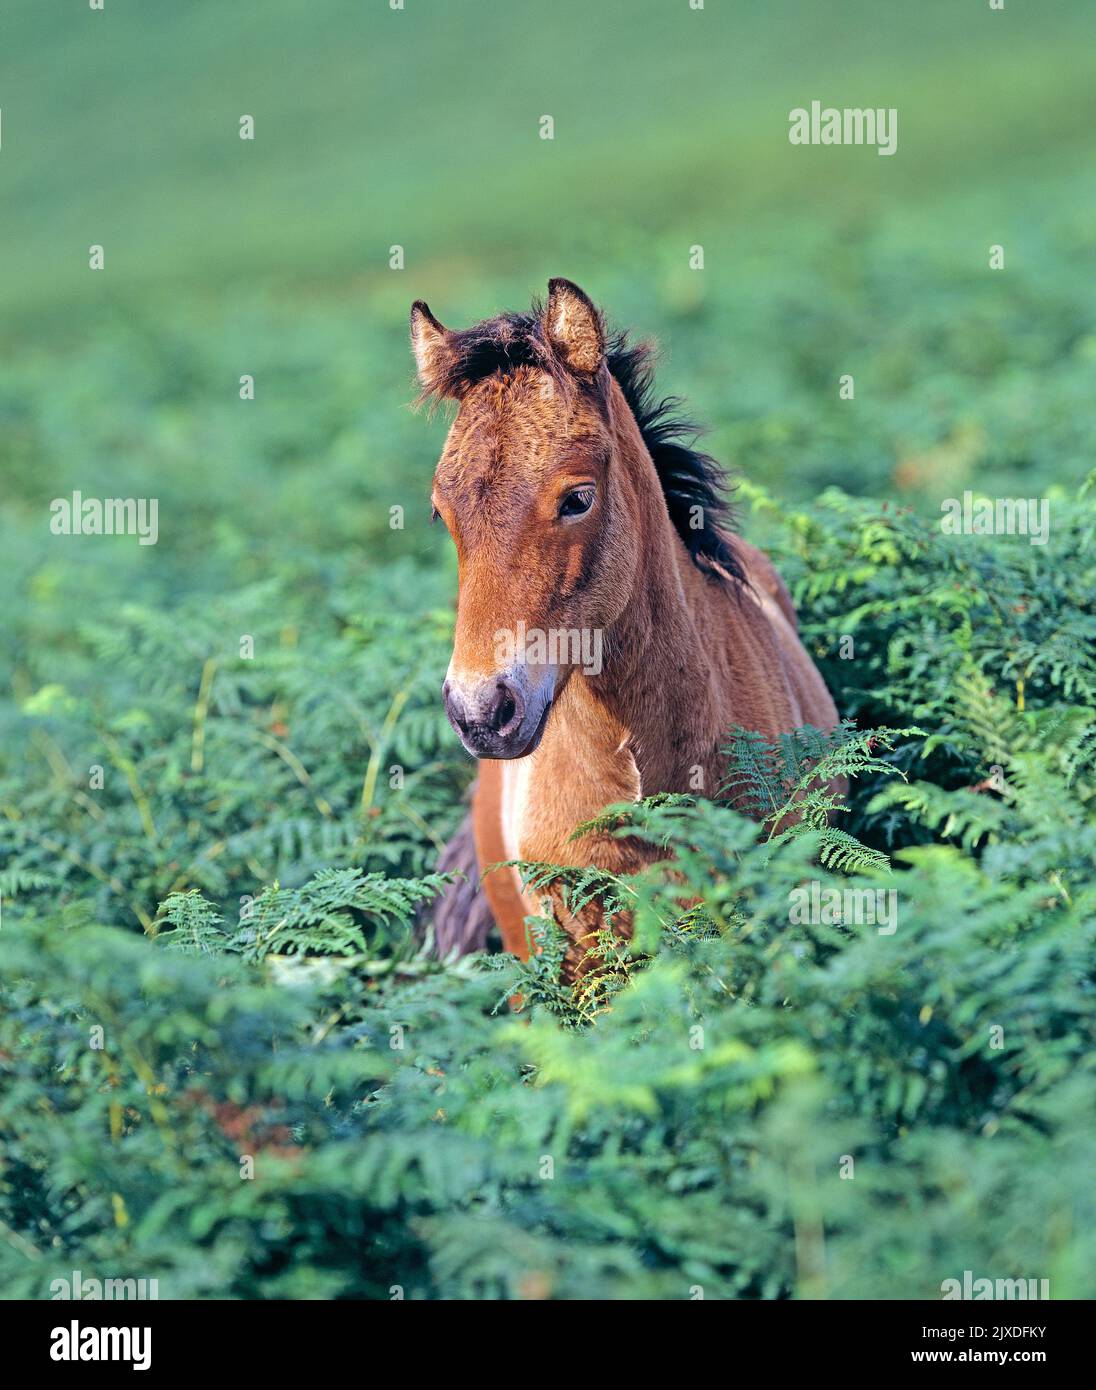 Free-ranging Dartmoor Pony. Foal standing in bracken. Dartmoor National Park, England Stock Photo